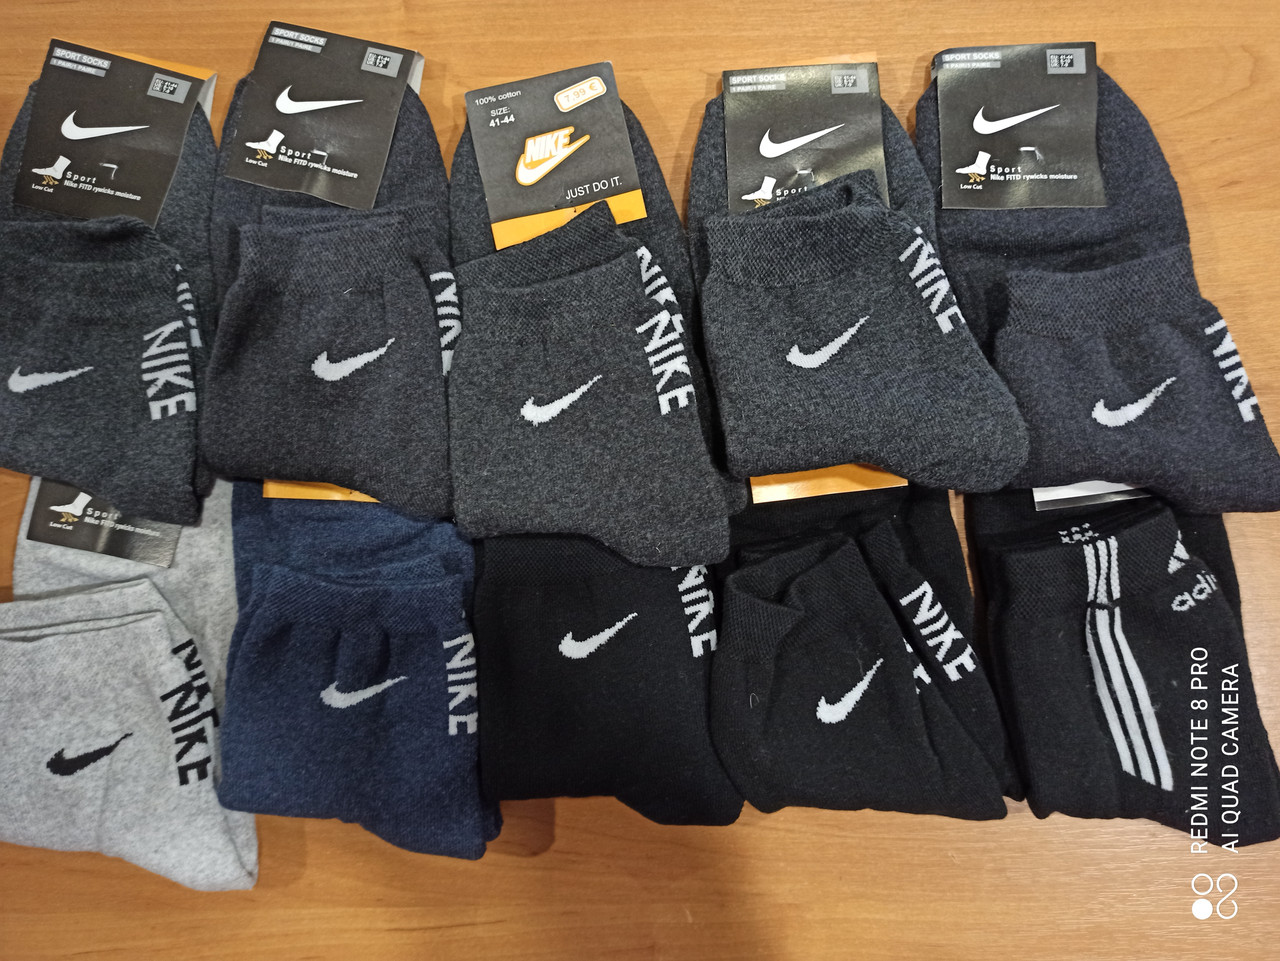 Шкарпетки чоловічі NIKE, ADIDAS, FILA, PUMA, спортивні, махрові, середньої висоти, розмір 41-44